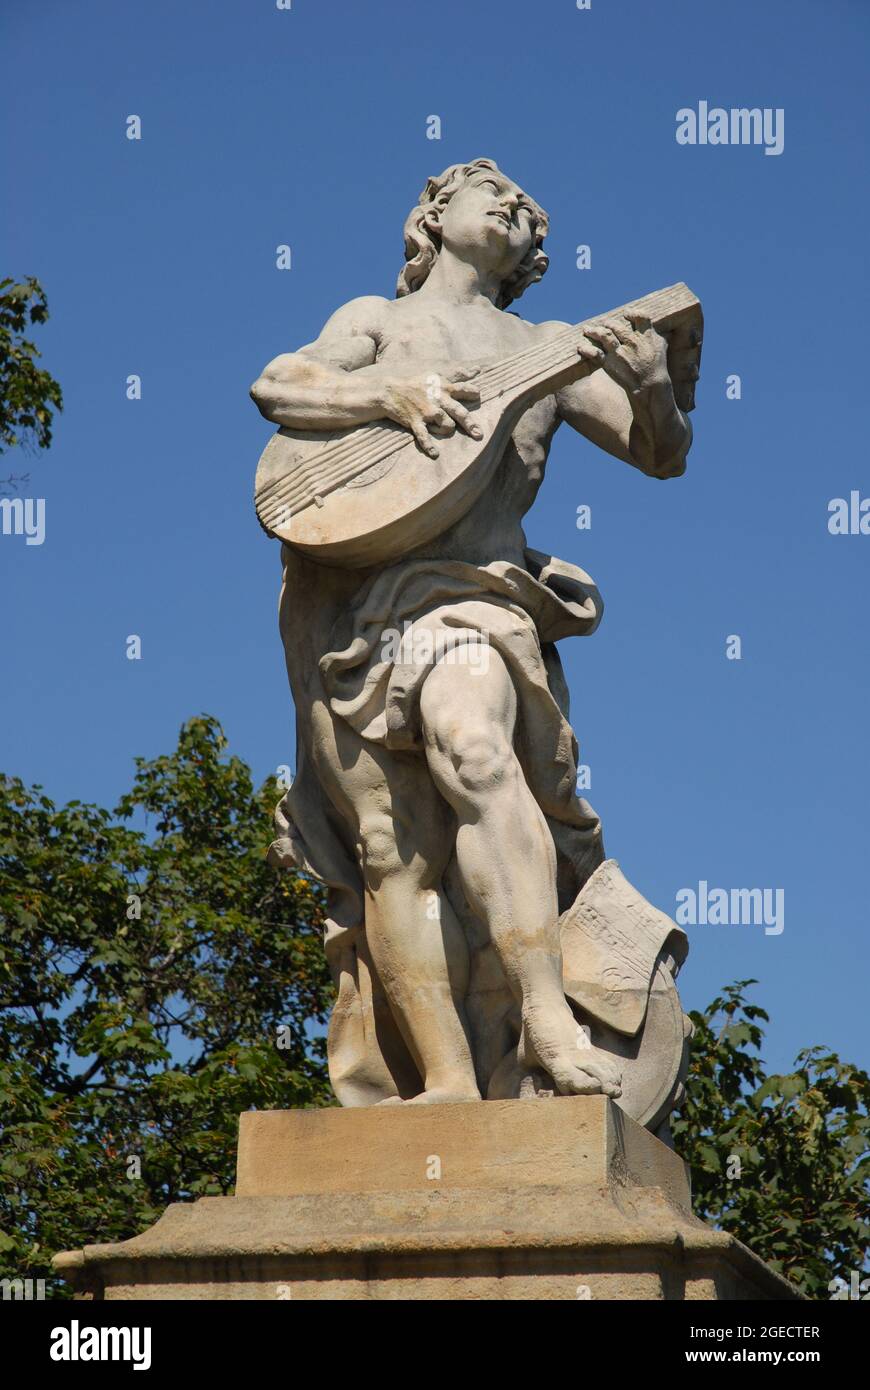 Walbrzych, bassa Slesia, Polonia: Figura mitologica, Orfeo che suona un liuto nel cortile onorario del Castello di Ksiaz Foto Stock